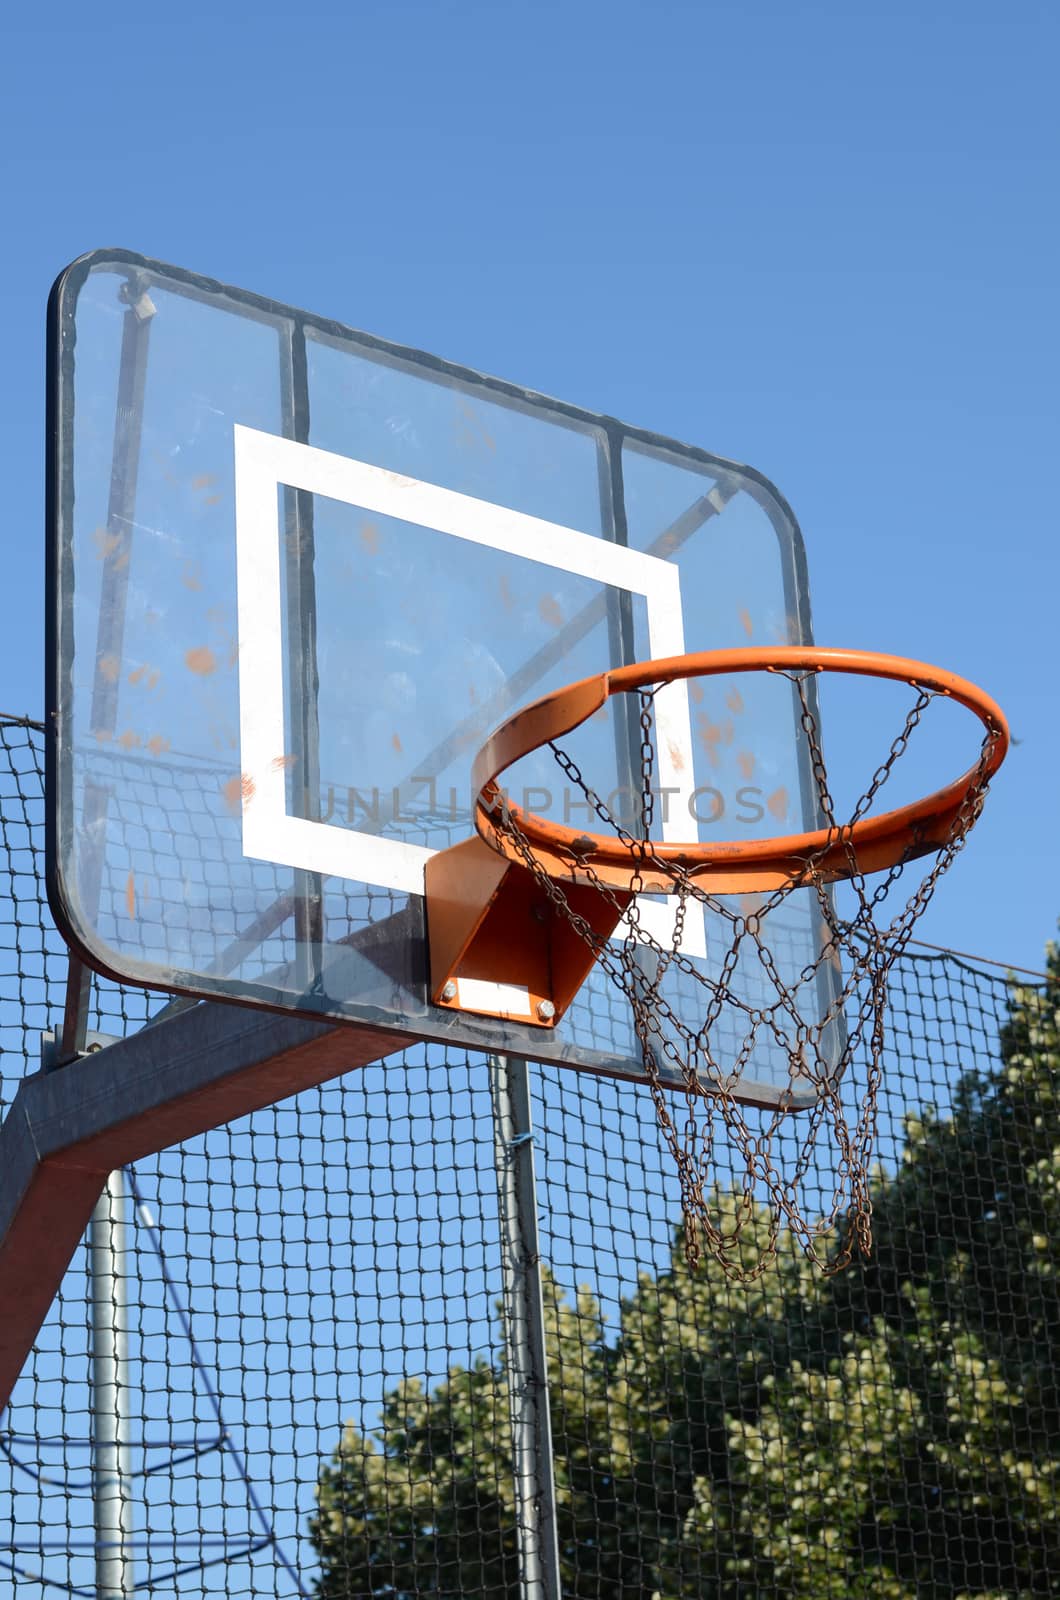 Basketball basket